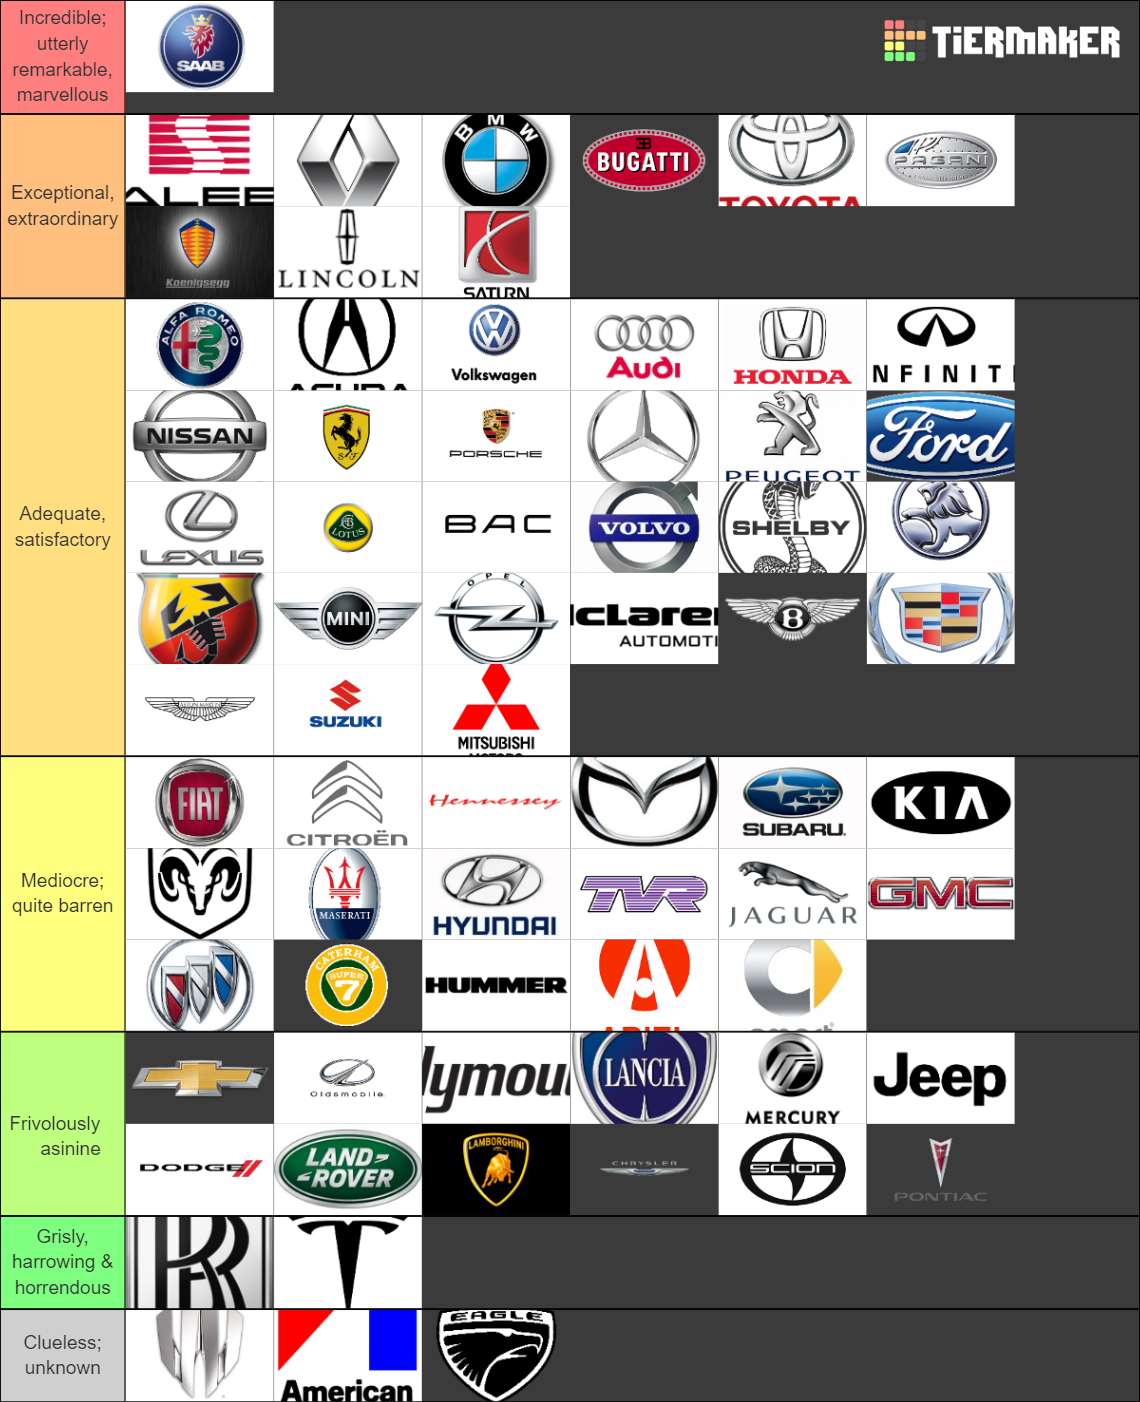 Recent Cars & Racing Tier Lists - TierMaker